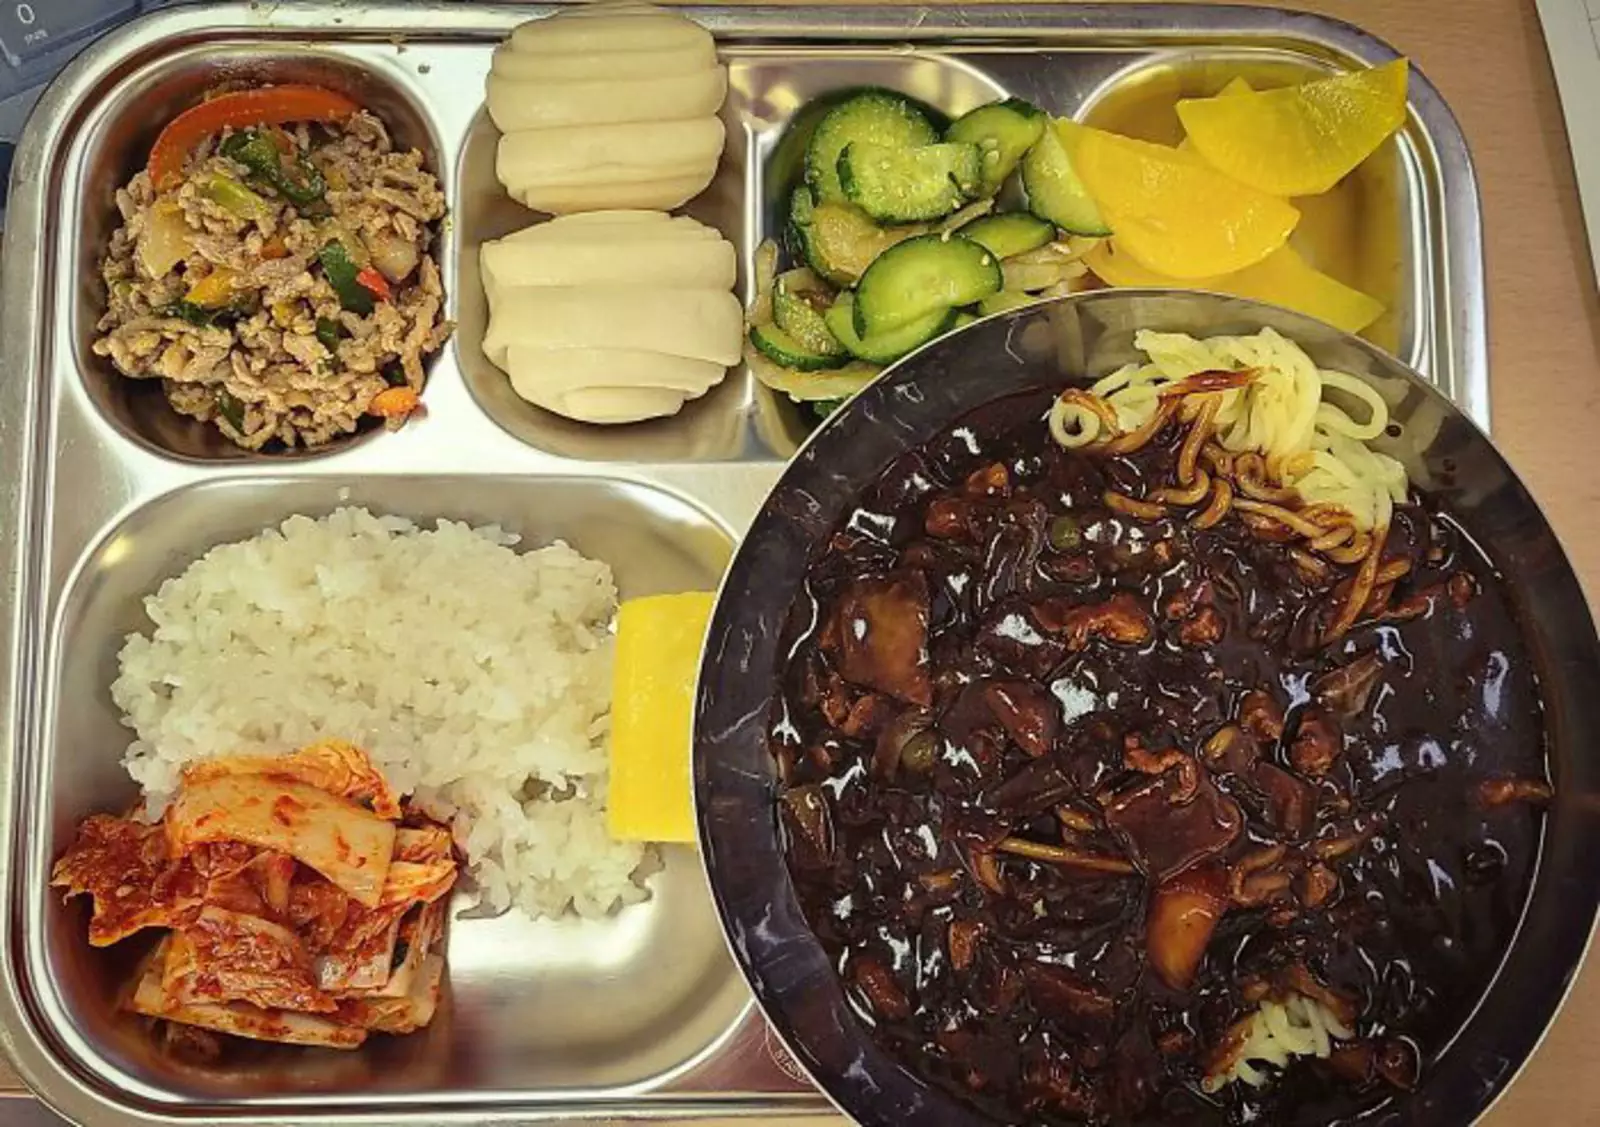 Еще один пример сбалансированного питания ученика из Кореи.